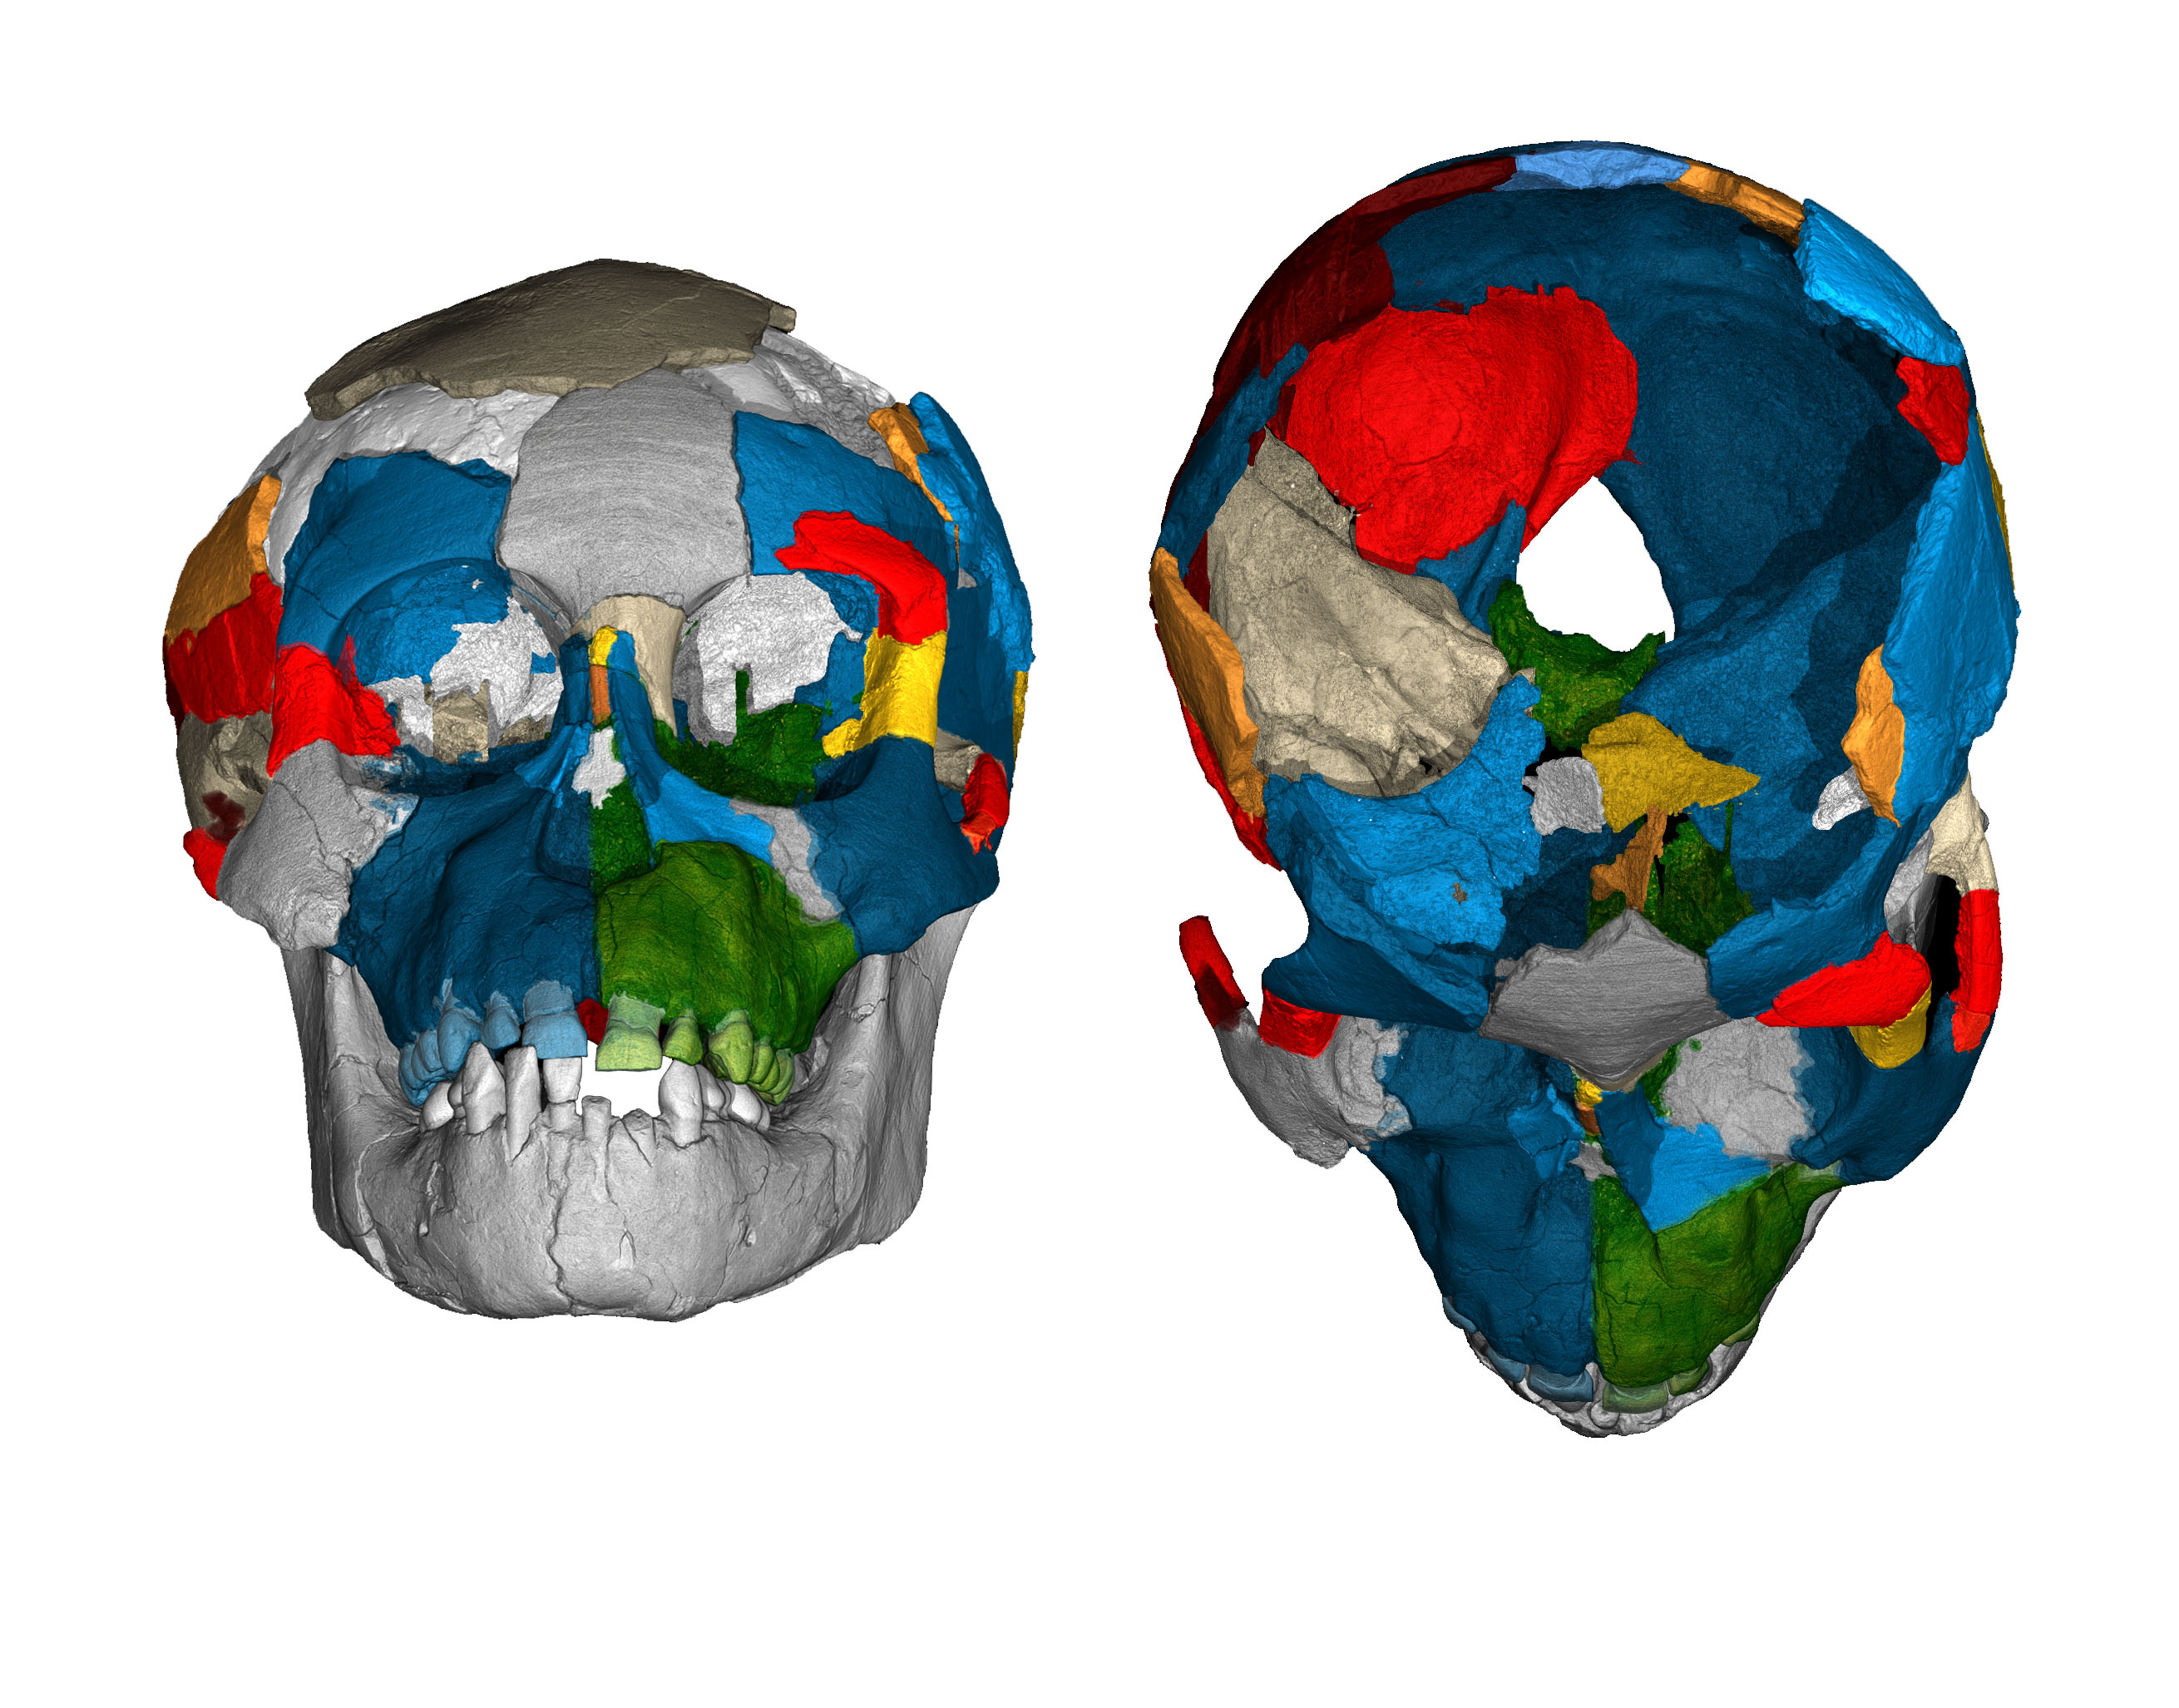 Dikika fossil skull reconstruction